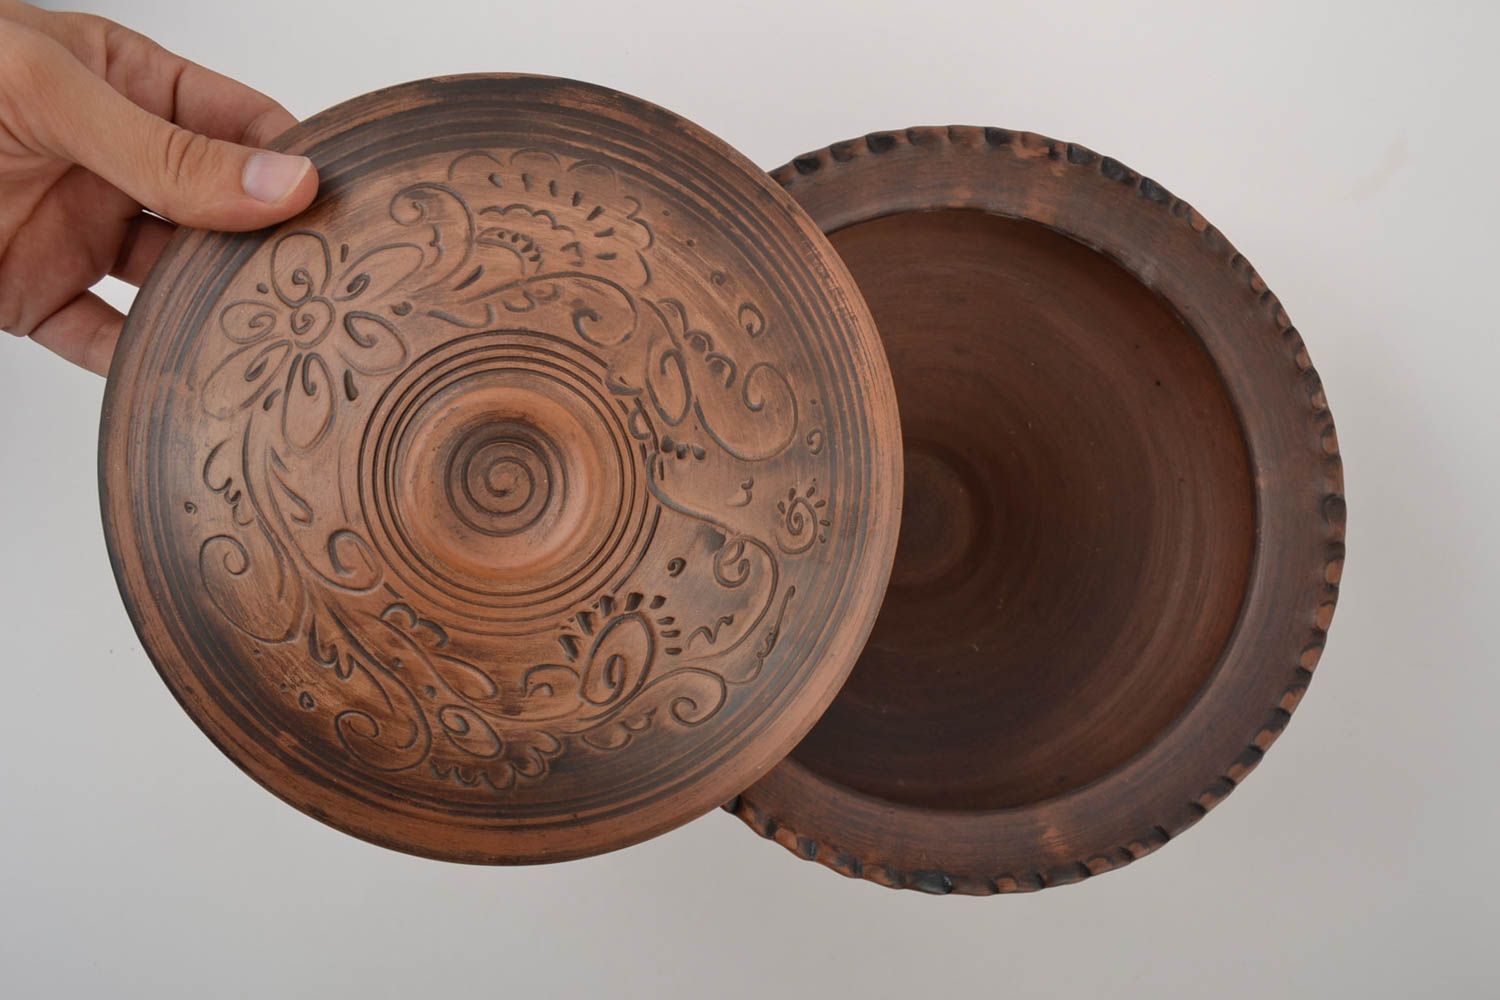 10 inches wide 6 inches tall ceramic decorative kitchenware pot 3 lb photo 2